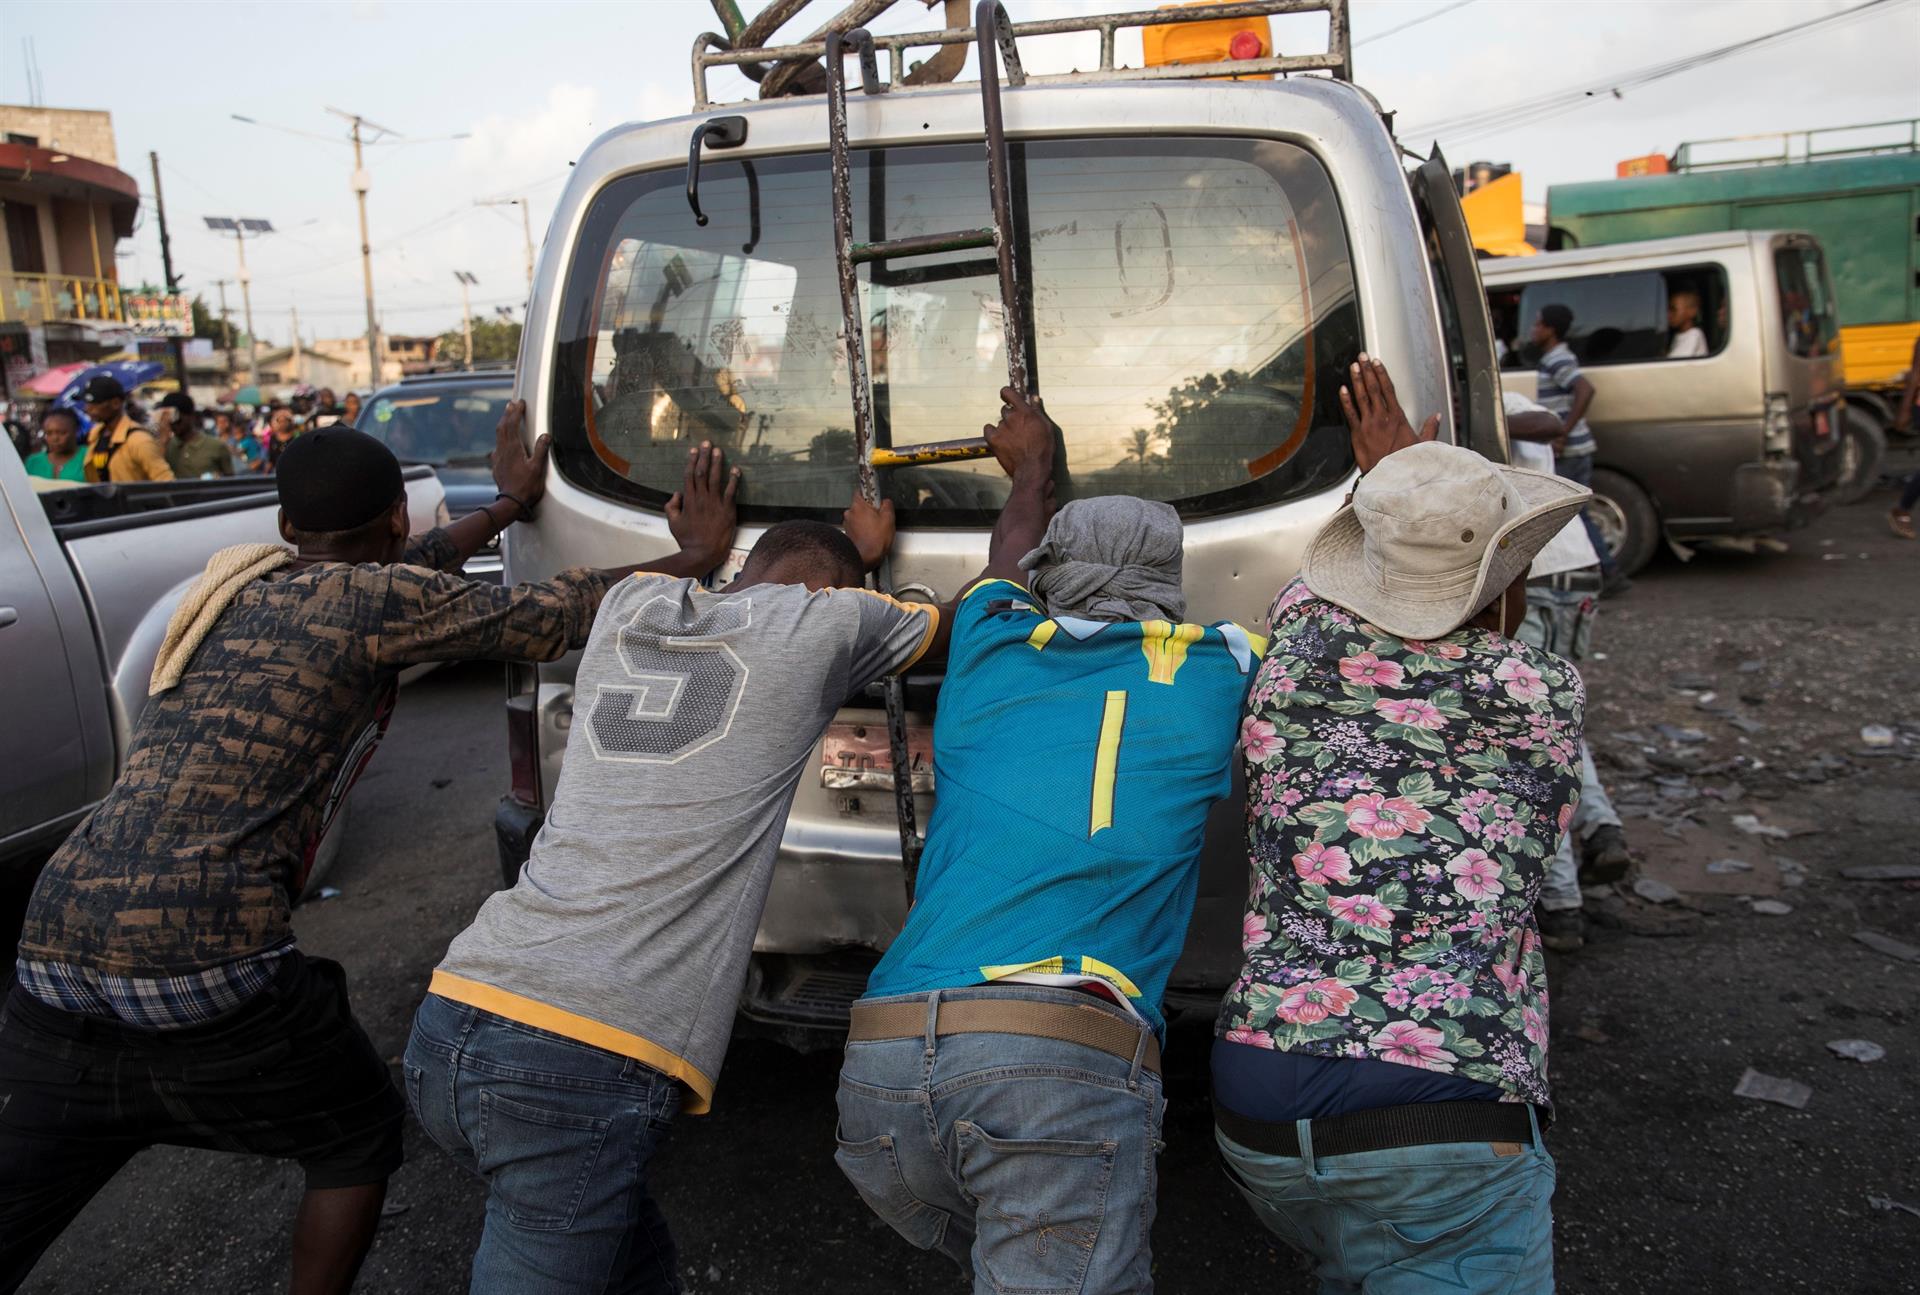 Llega gasoil a hospitales de Haití tras semanas sin suministro